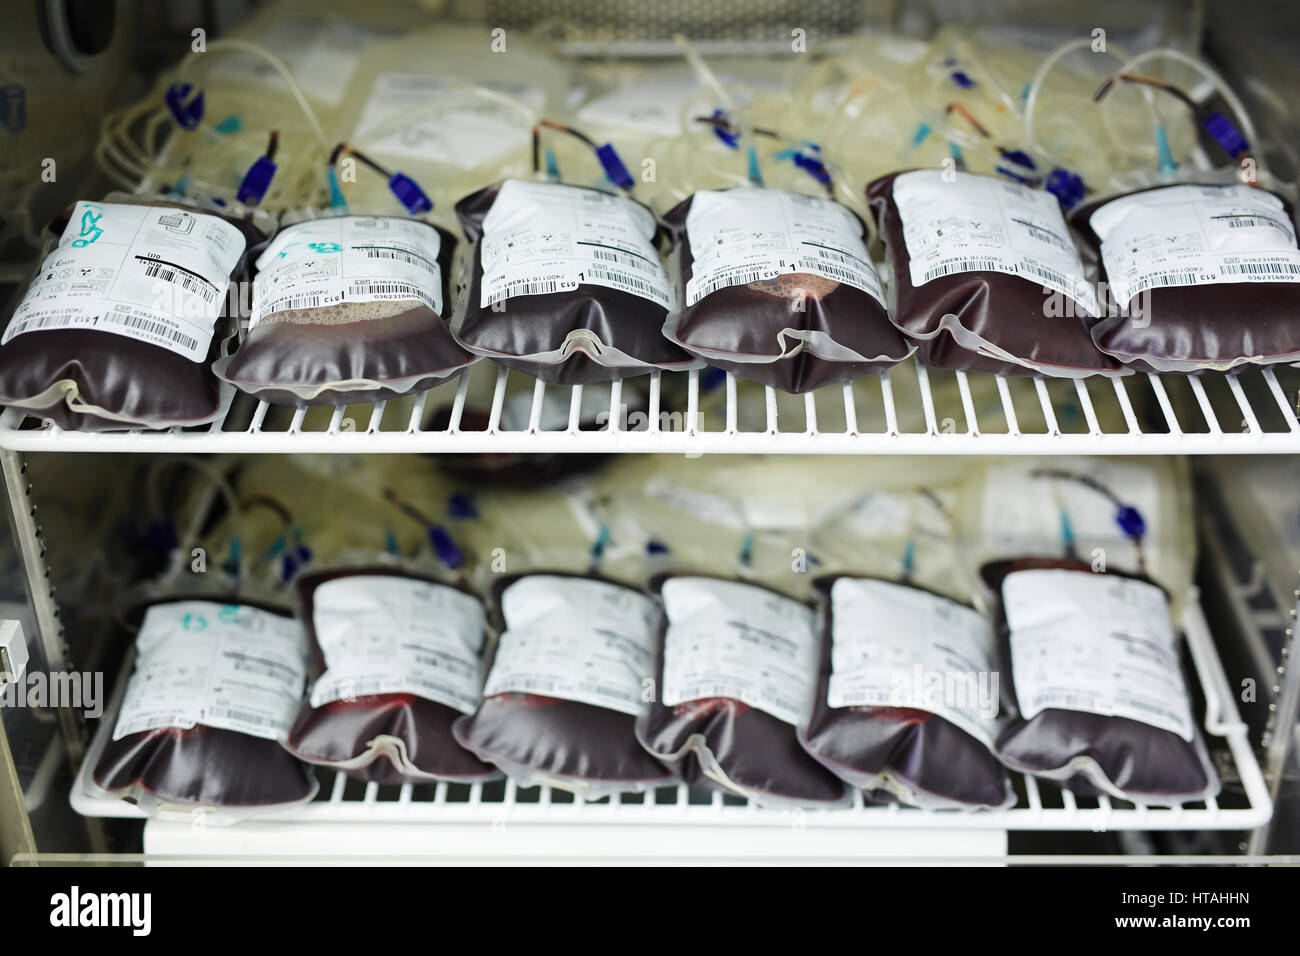 Zwei Reihen von Blutbeuteln in Kühlschrank Stockfoto